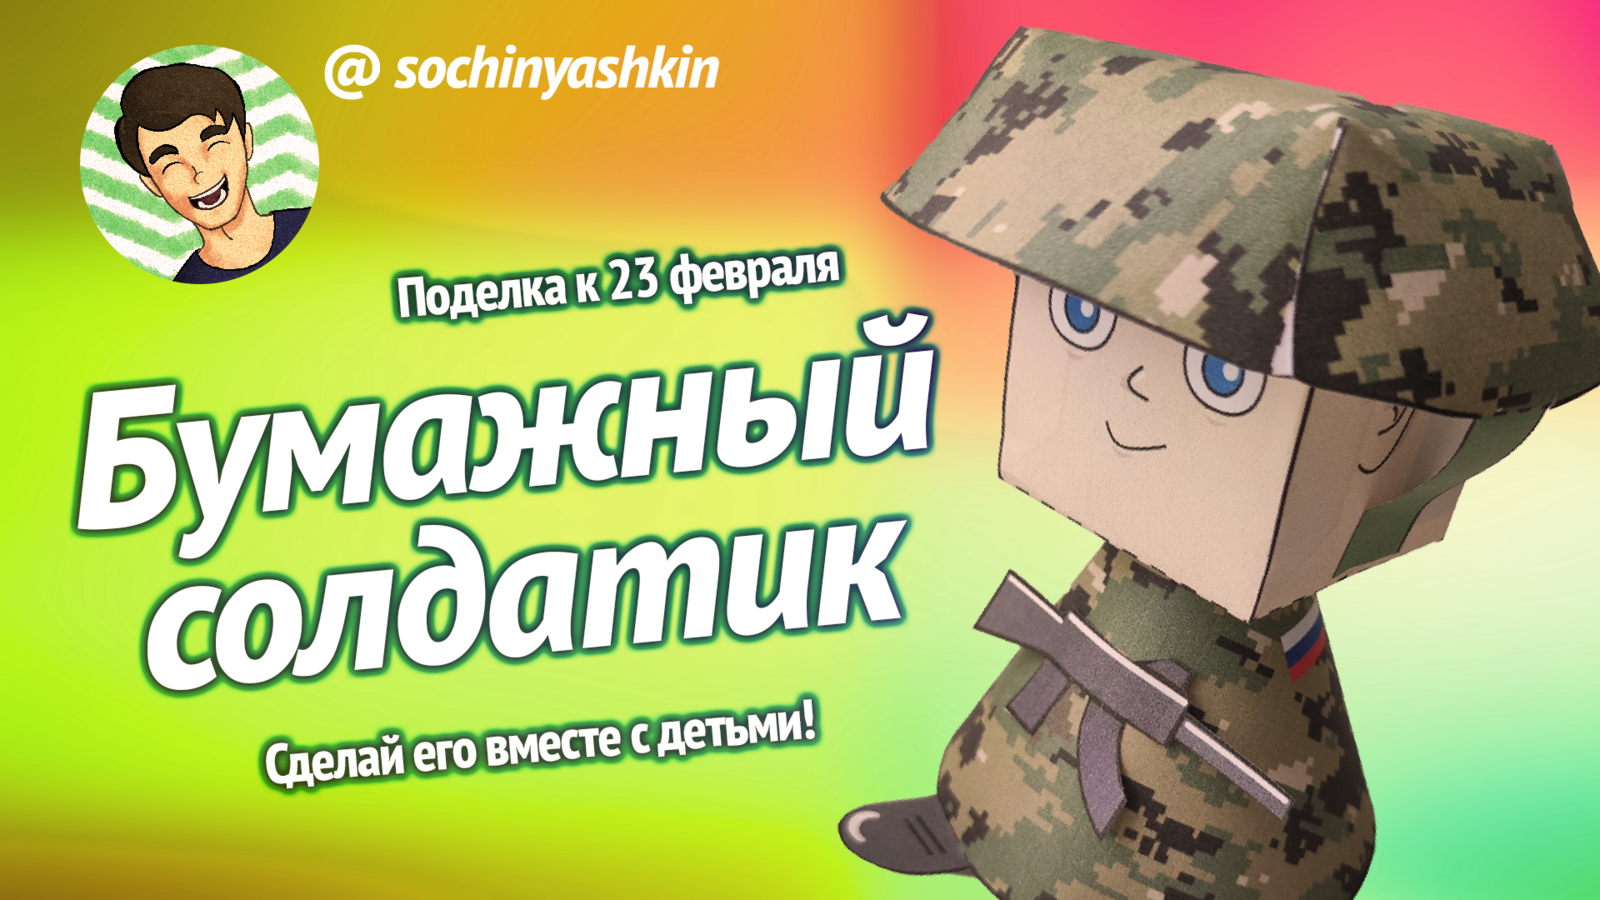 Сочиняшкин сделал модель "Бумажного солдатика" к 23 февраля